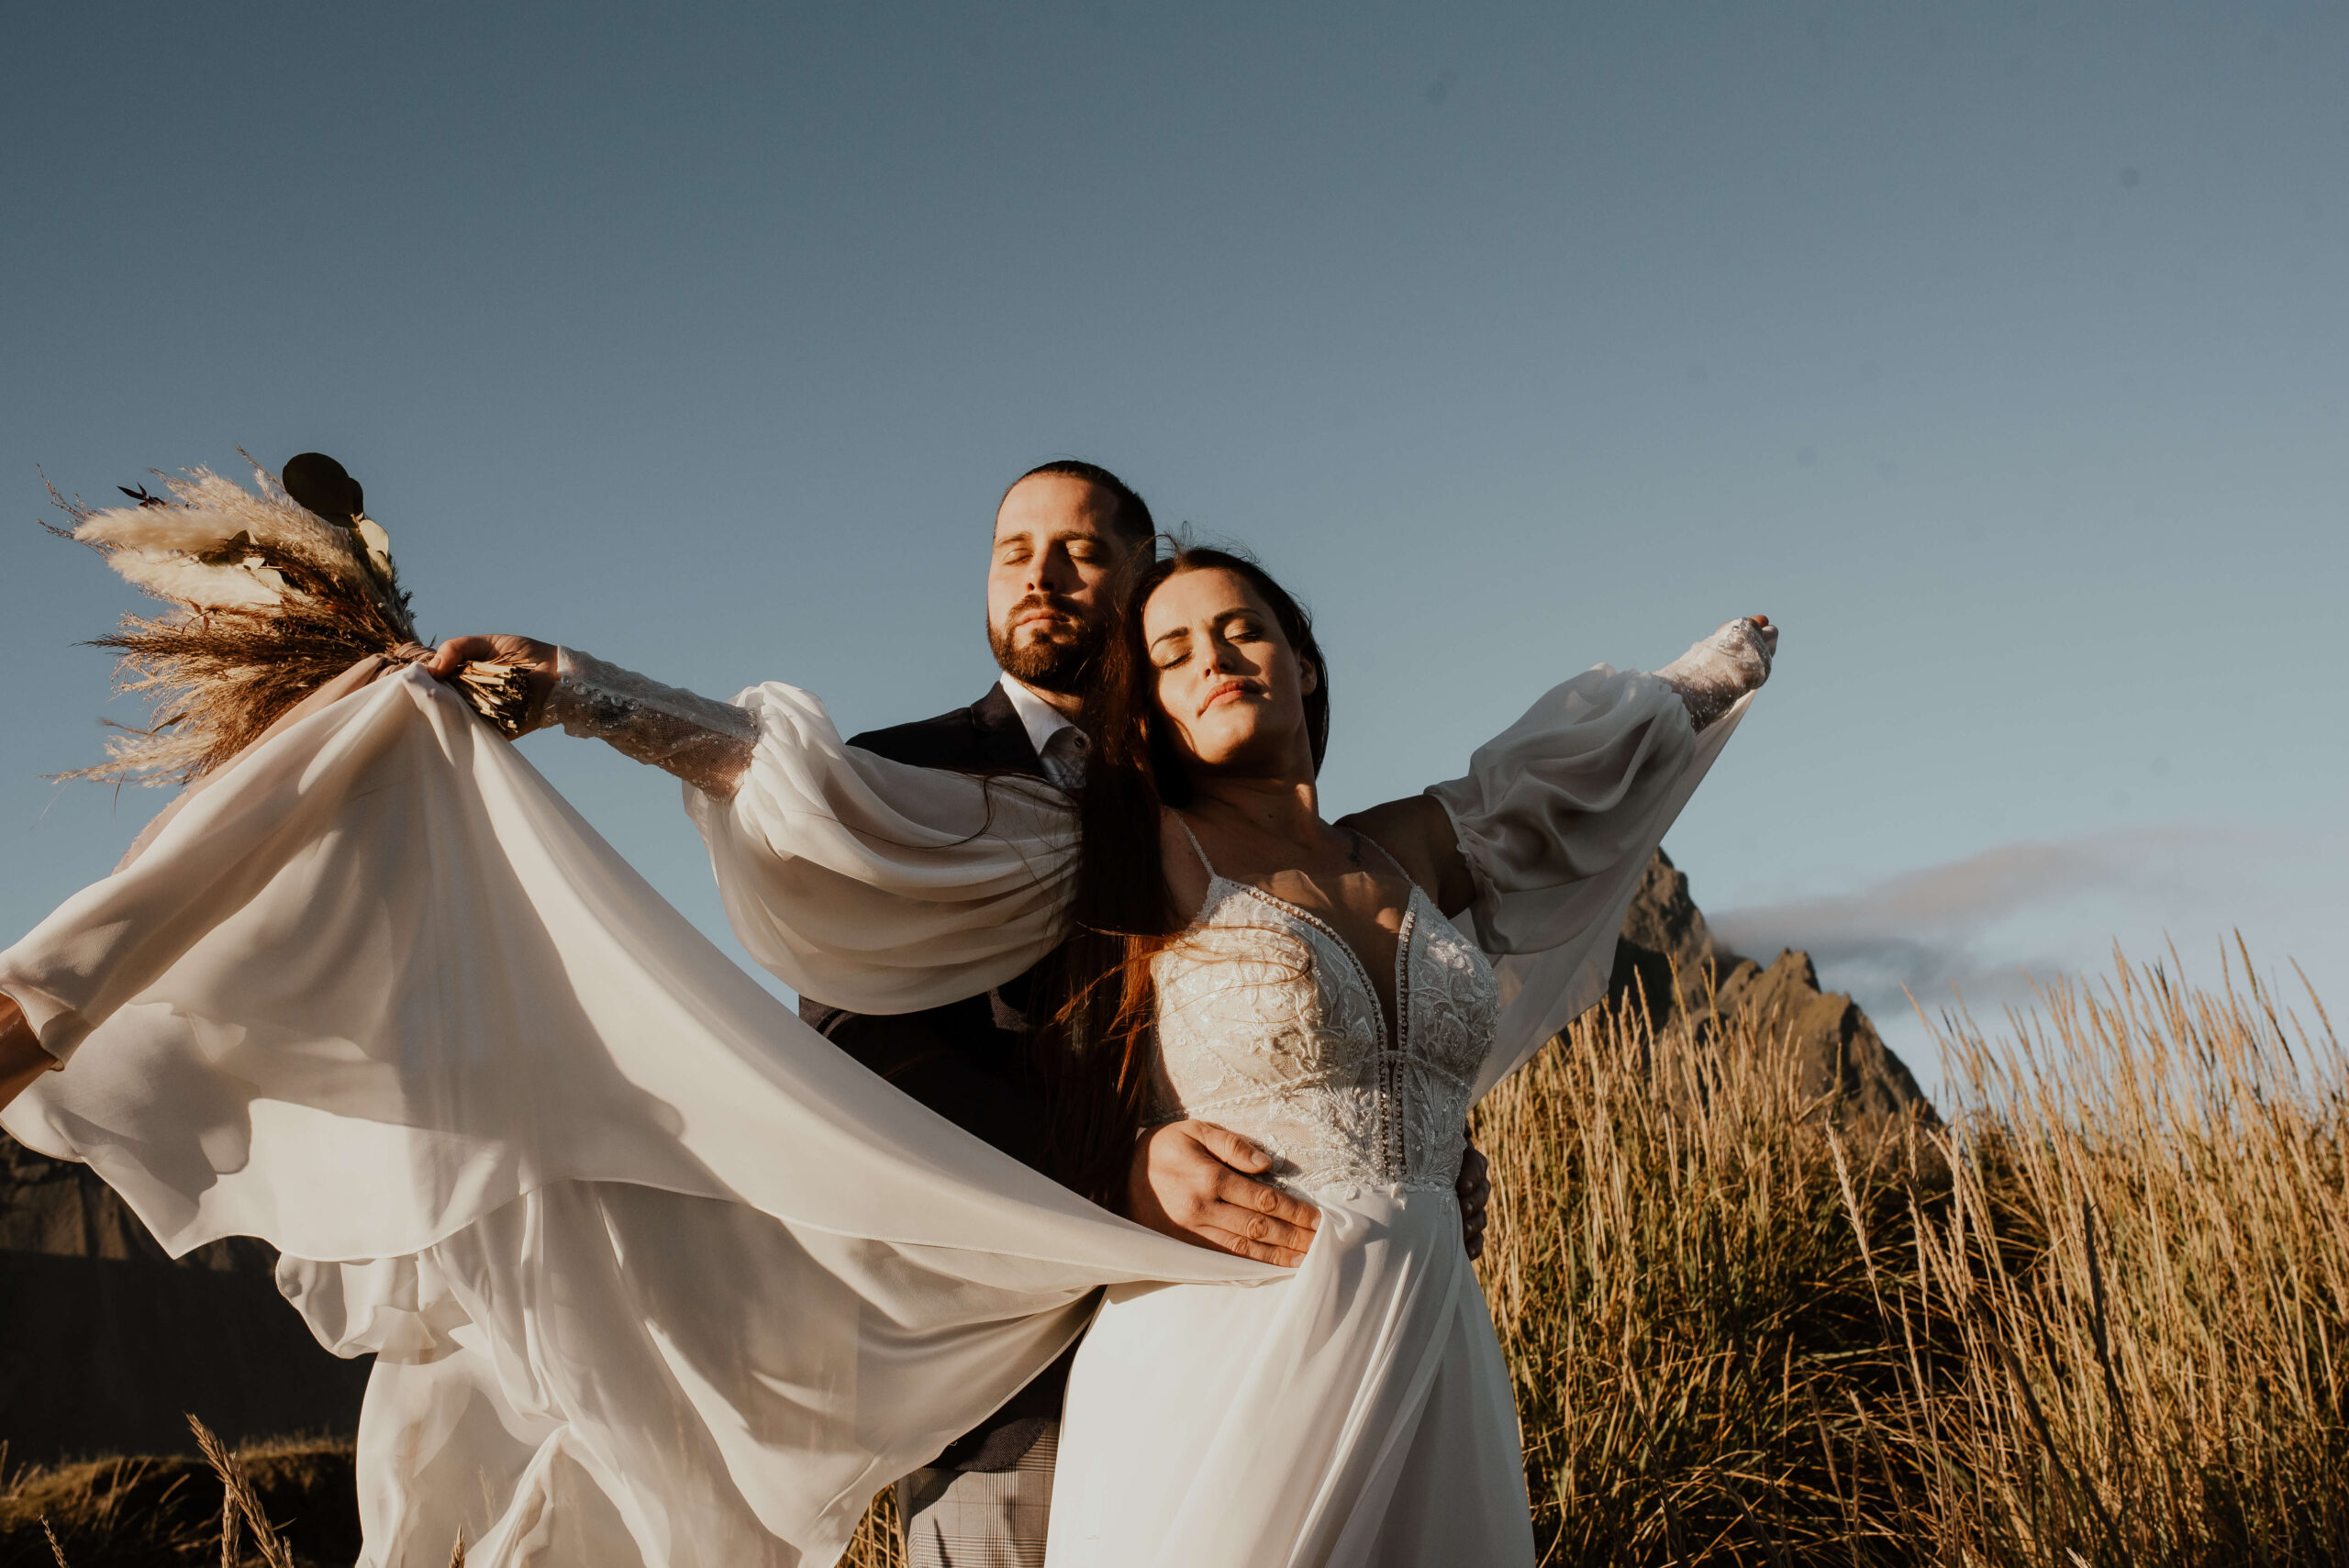 Auf dem Foto sieht man eine Hochzeitsreportage von Katarzyna Nord Fotografie. Das Bild zeigt ein junges Paar, das auf einem Gipfel in Island steht. Die Aussicht auf die umliegende Landschaft ist atemberaubend. Im Hintergrund sieht man eine Bergkette und den Himmel, der sich in verschiedenen Blautönen färbt. Das Paar steht Hand in Hand und schaut sich verliebt in die Augen. Die Braut trägt ein weißes Kleid und der Bräutigam einen dunklen Anzug. Beide haben einen glücklichen und zufriedenen Ausdruck auf dem Gesicht. Man kann spüren, dass sie diesen Moment auf dem Gipfel gemeinsam genießen und für immer in Erinnerung behalten werden.


